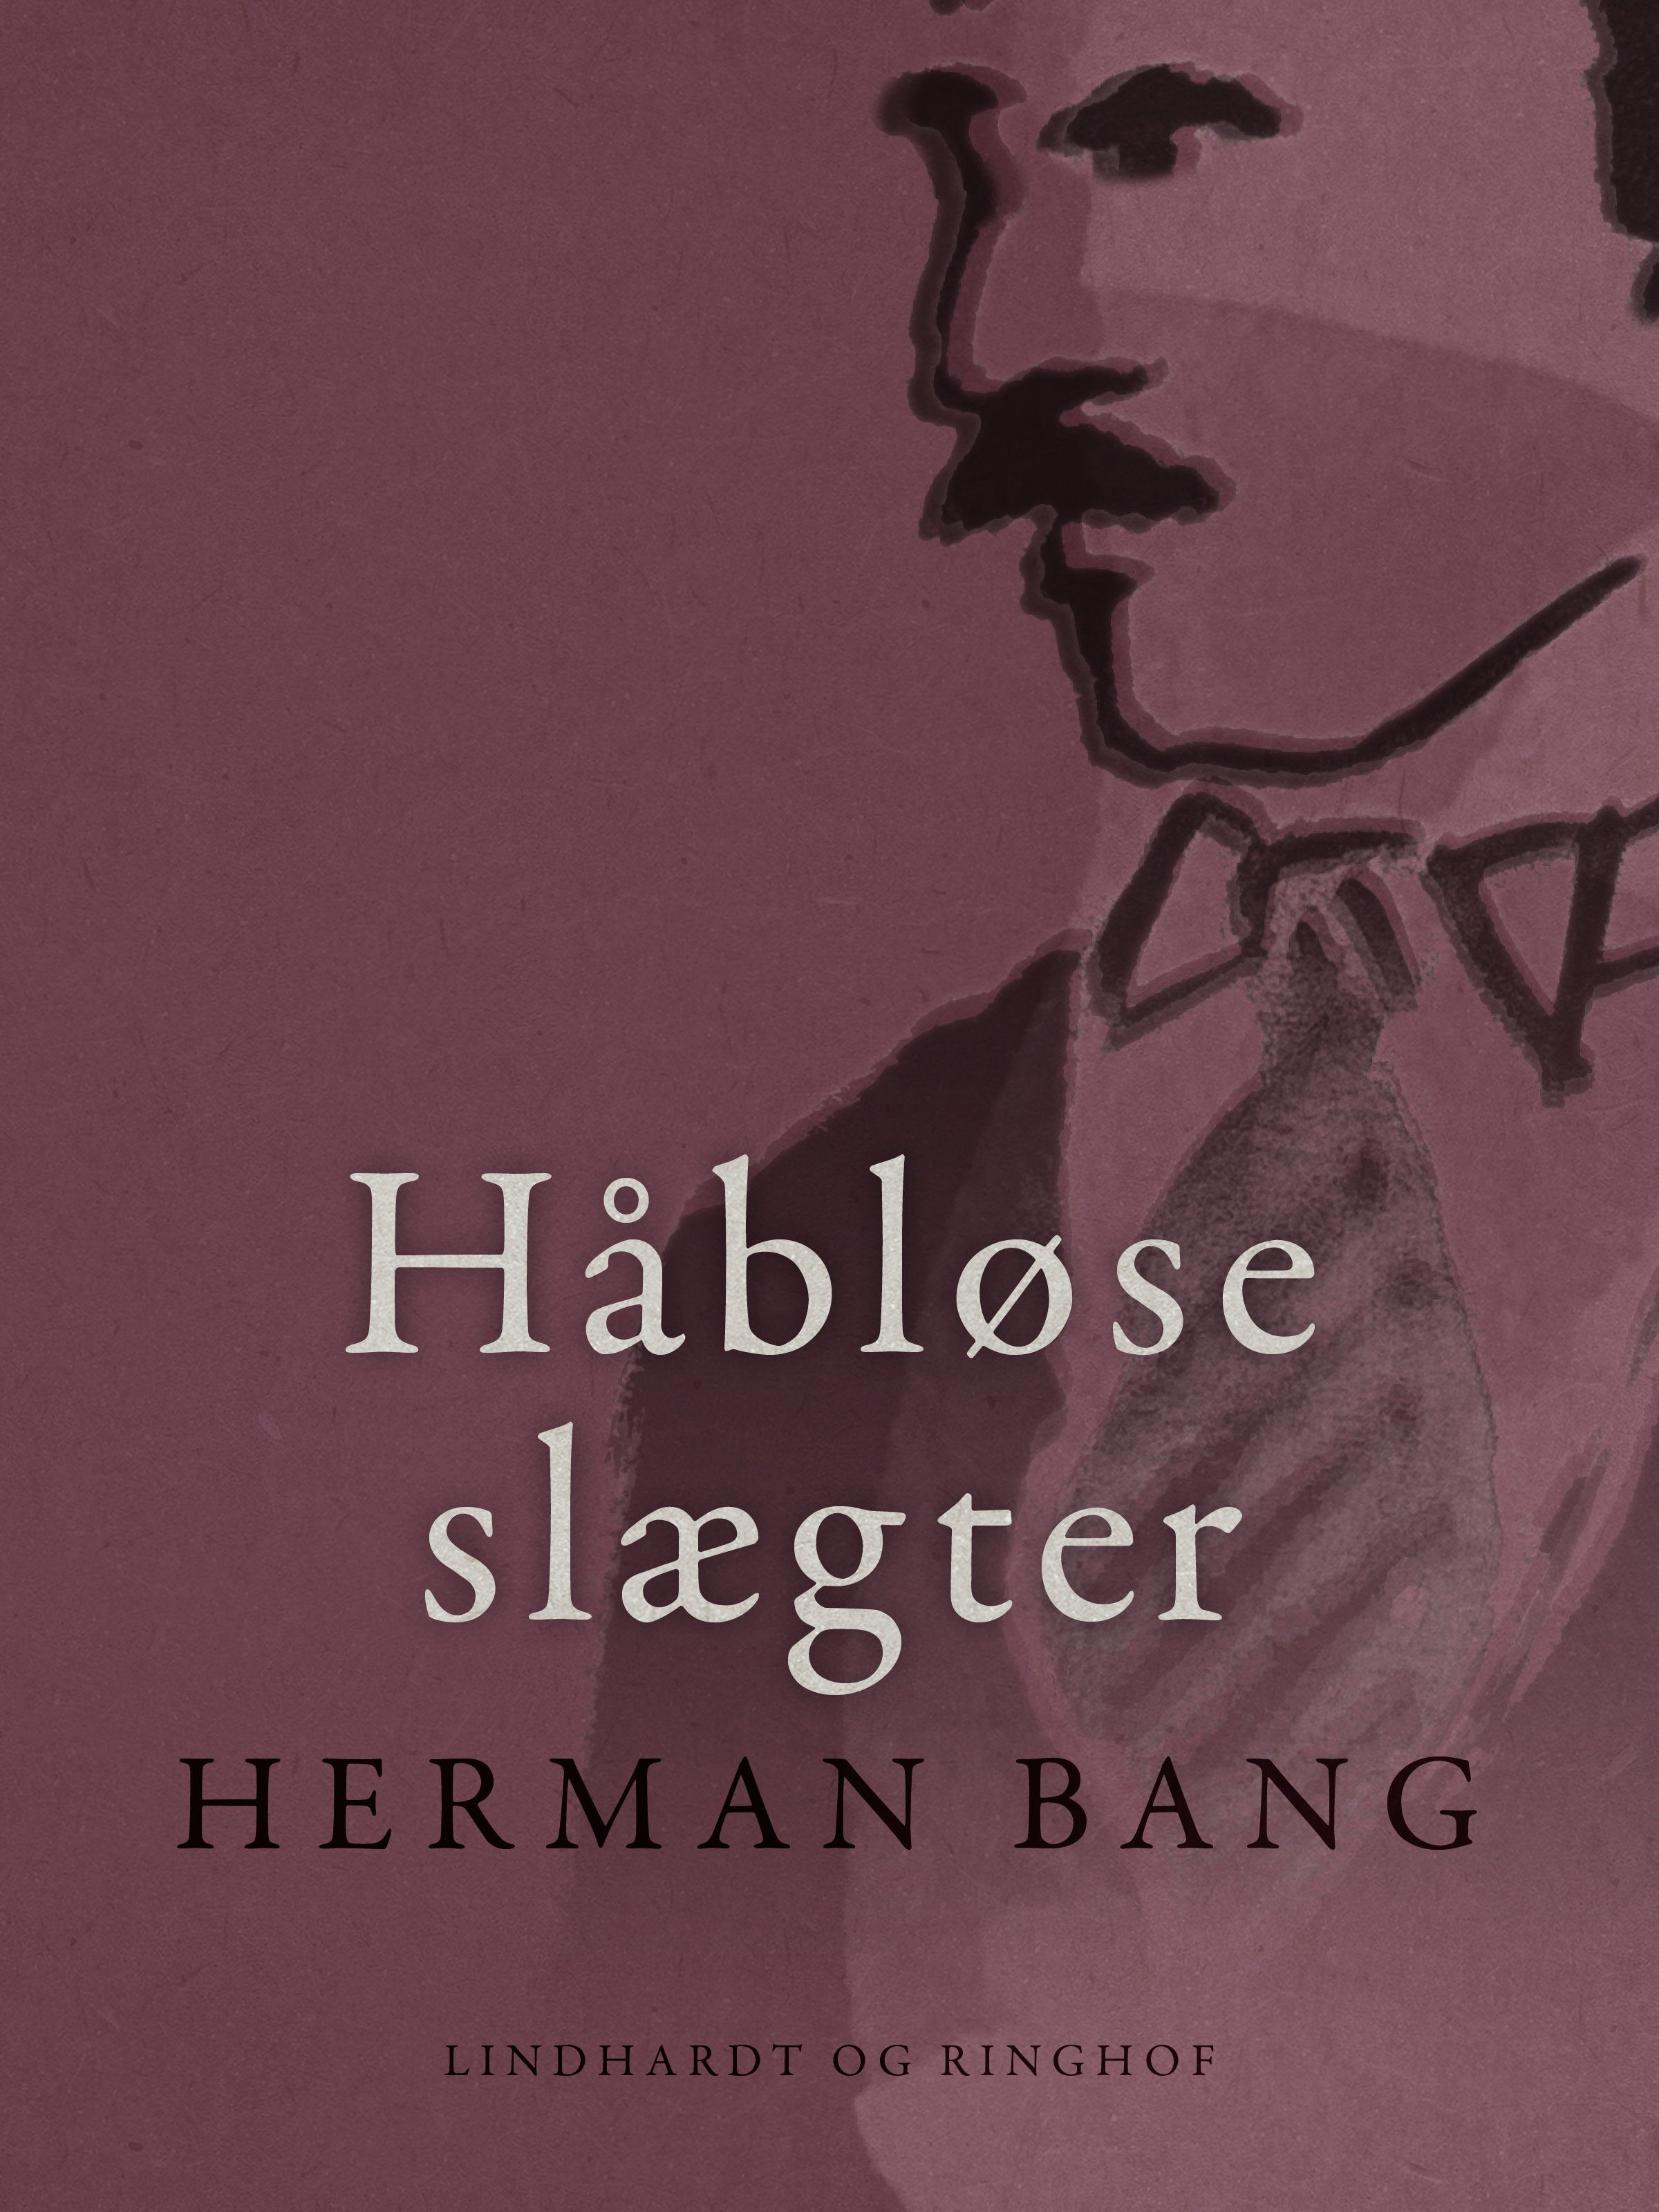 Håbløse slægter, eBook by Herman Bang